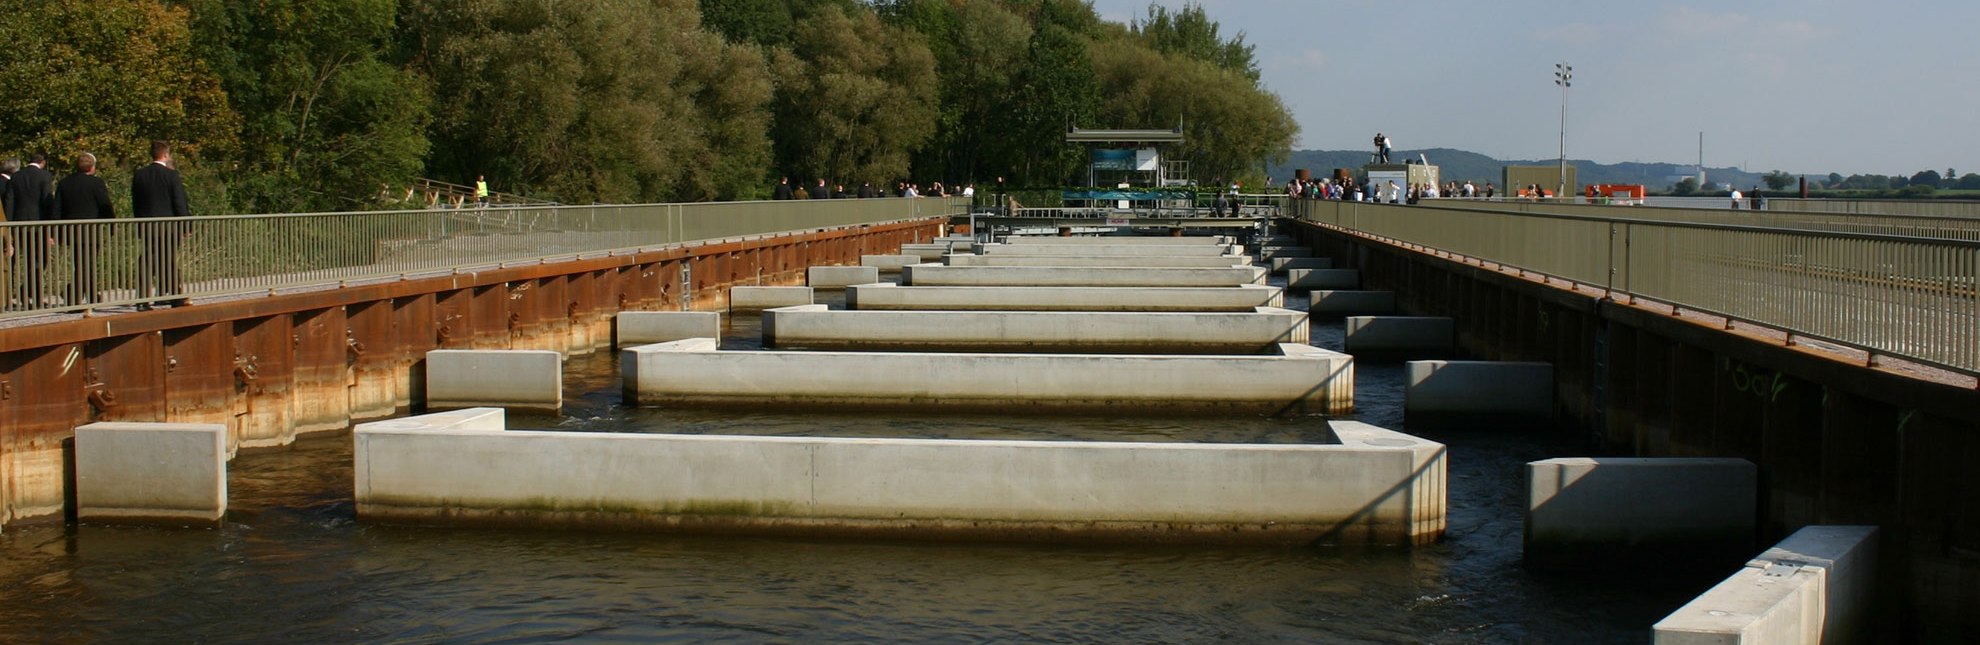 Europas größte Fischaufstiegsanlage an der Elbe in Geesthacht, © Tourist-Information Geesthacht